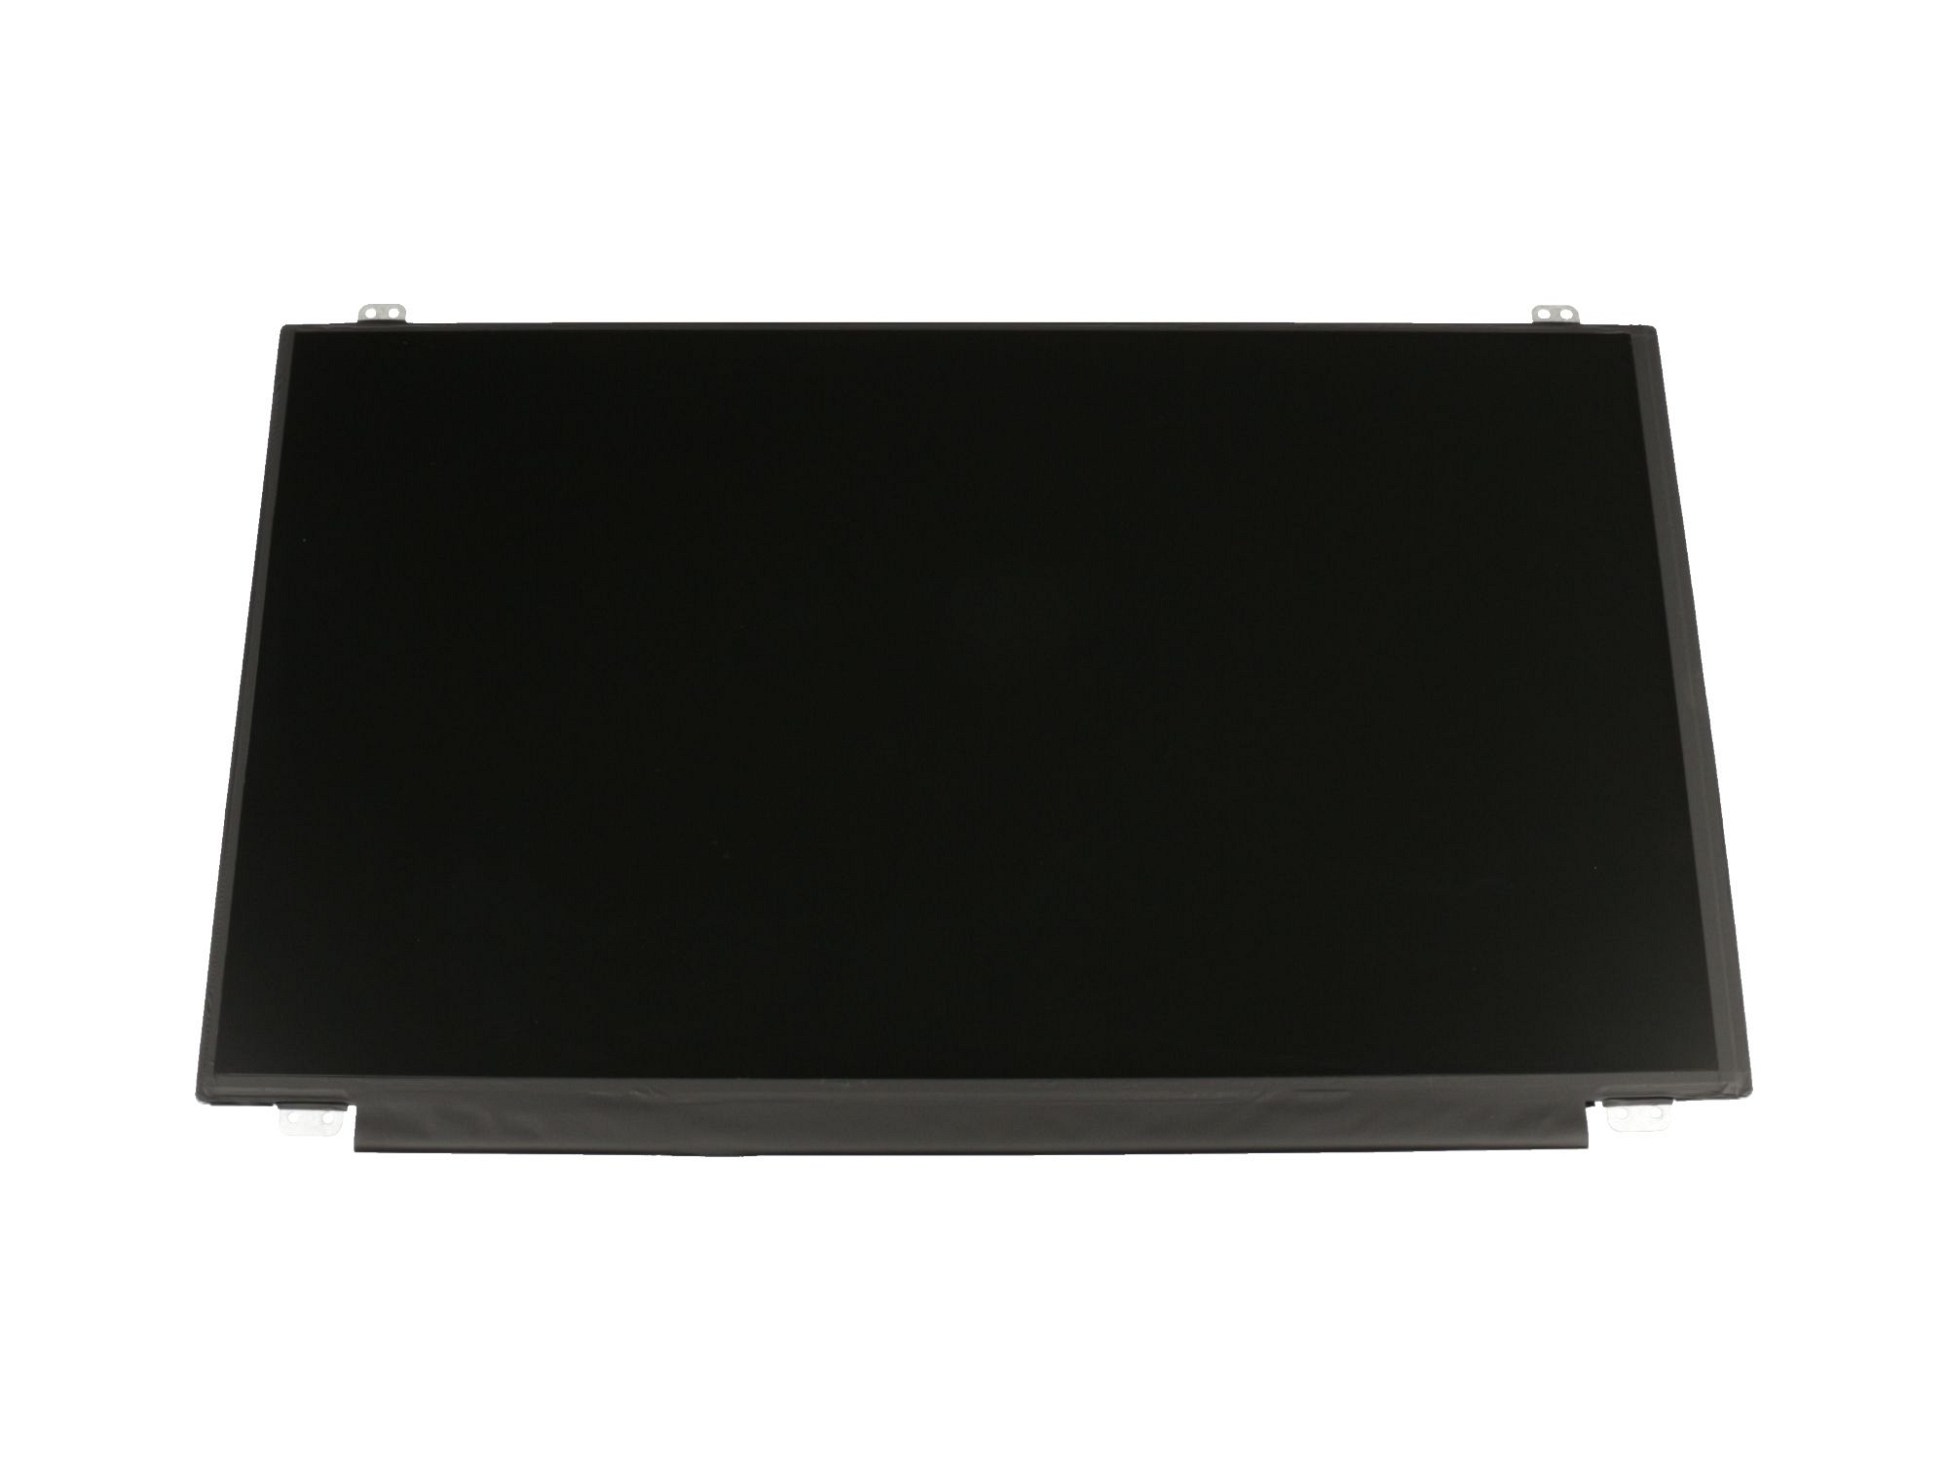 LG LP156WHB-TPGB Display (1366x768) matt slimline